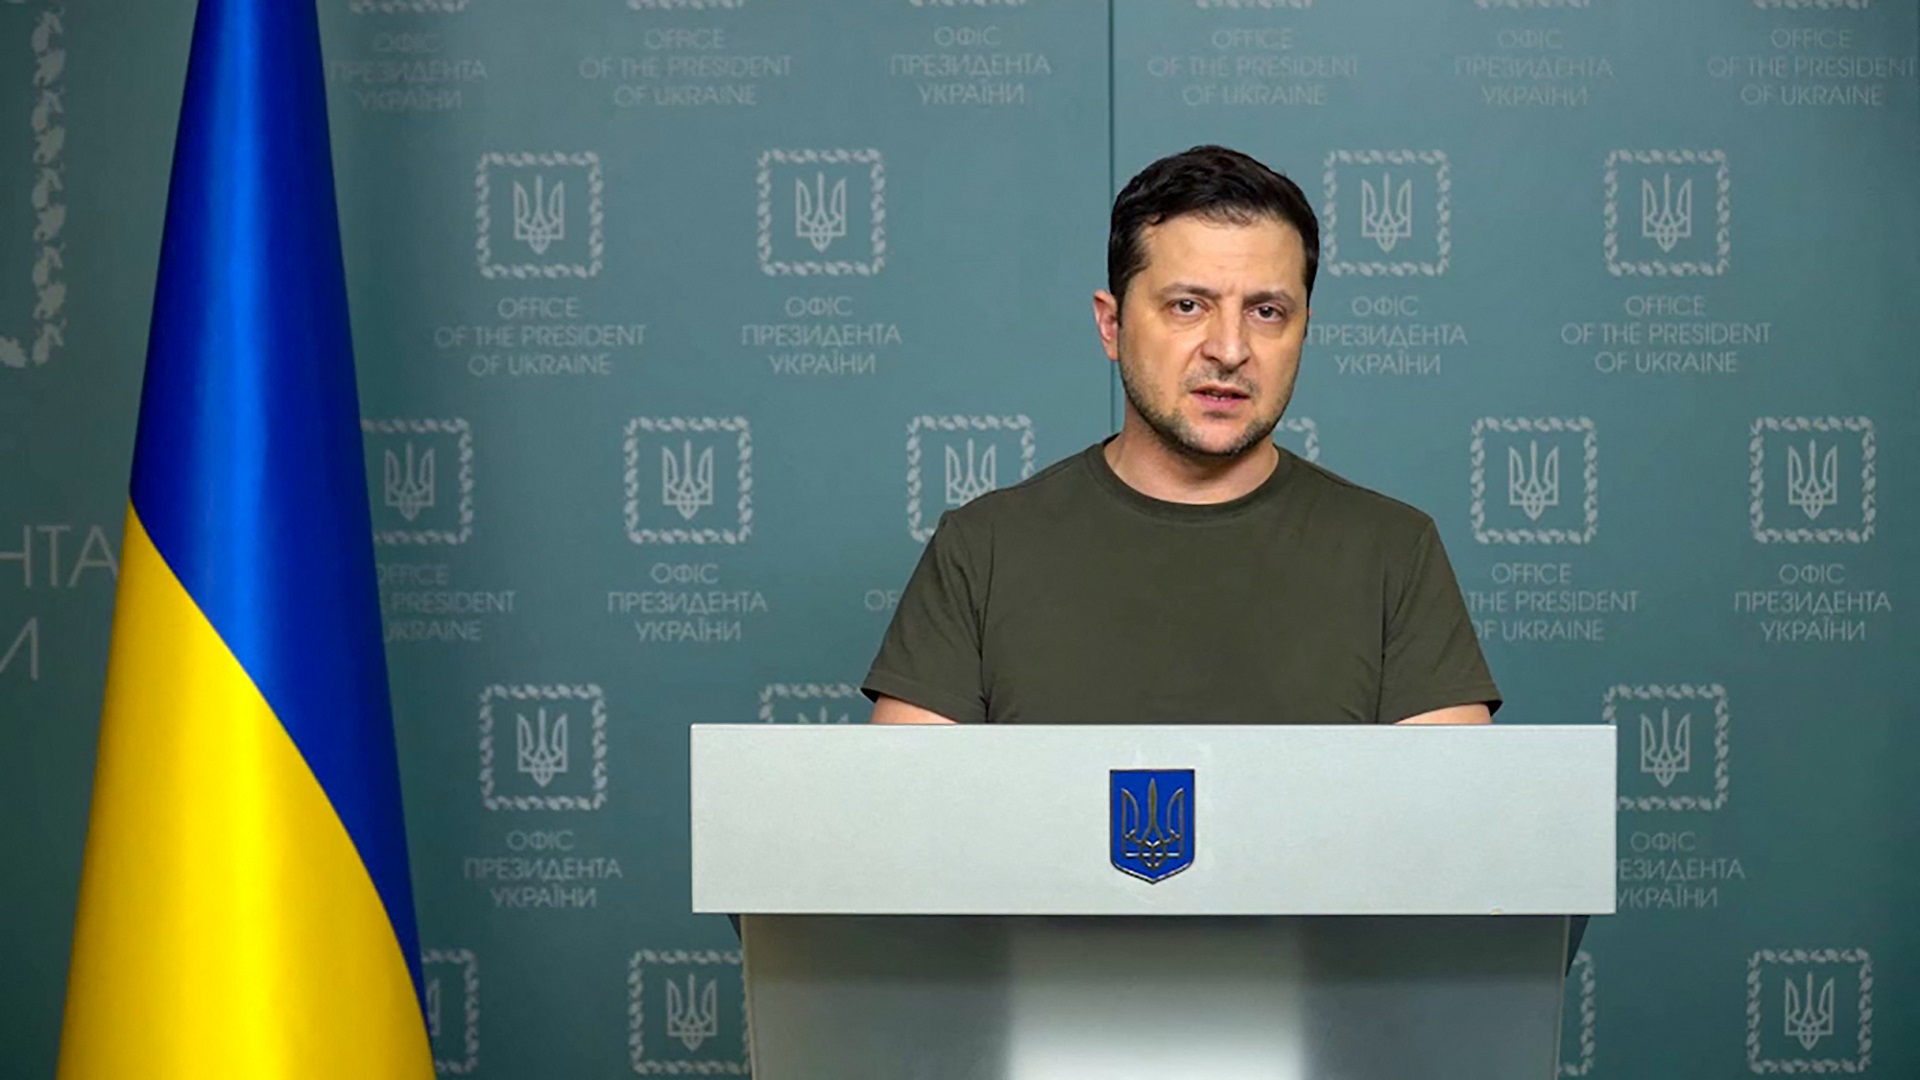 El presidente Zelensky, le habala a los ucranianos 